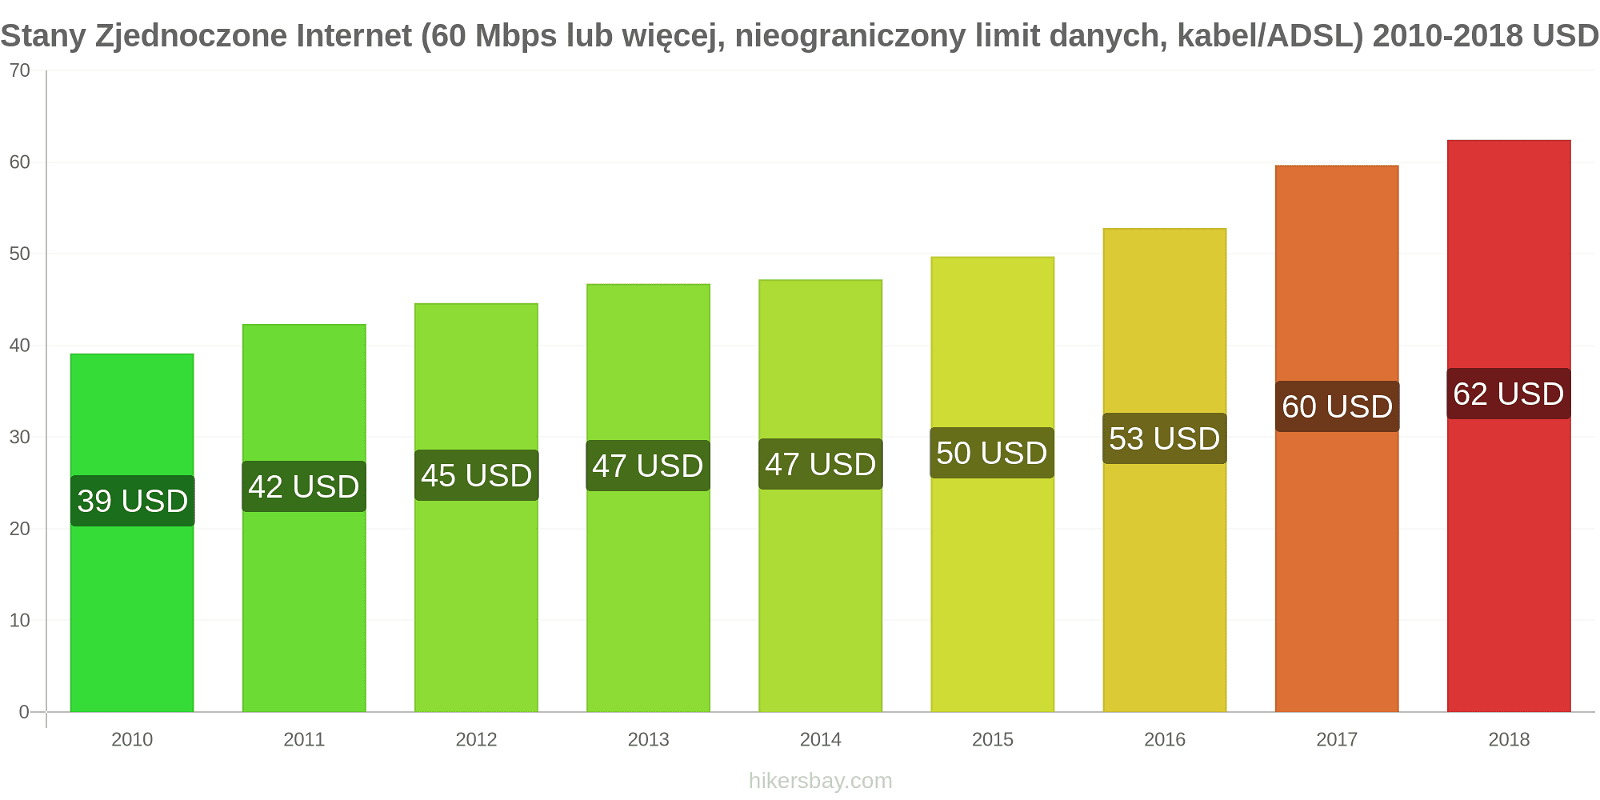 Stany Zjednoczone zmiany cen Internet (60 Mbps lub więcej, nieograniczony limit danych, kabel/ADSL) hikersbay.com